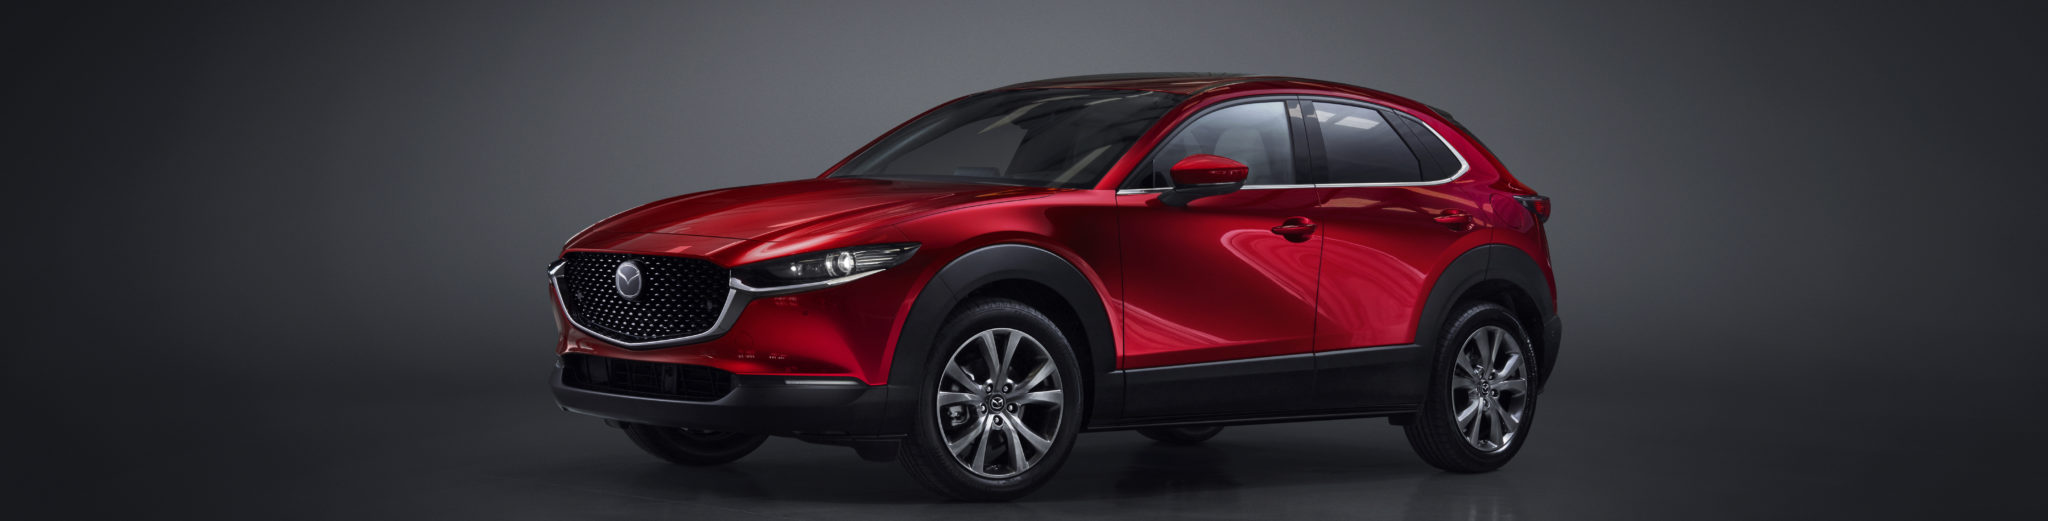 Mazda CX 30 - Mazda completa su gama con el nuevo Mazda CX-30